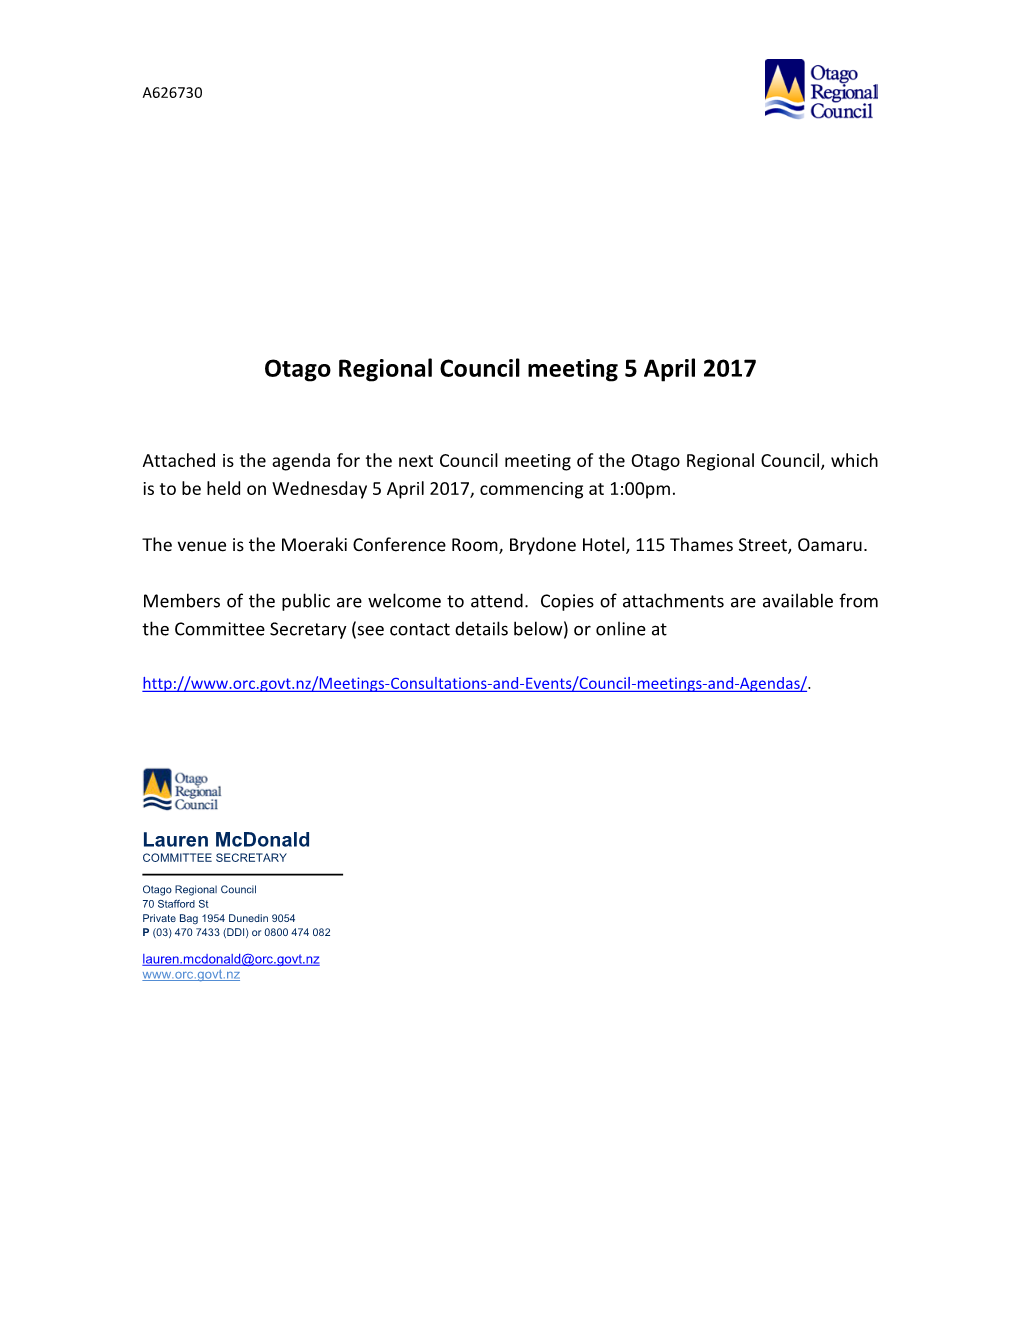 Otago Regional Council Meeting 5 April 2017